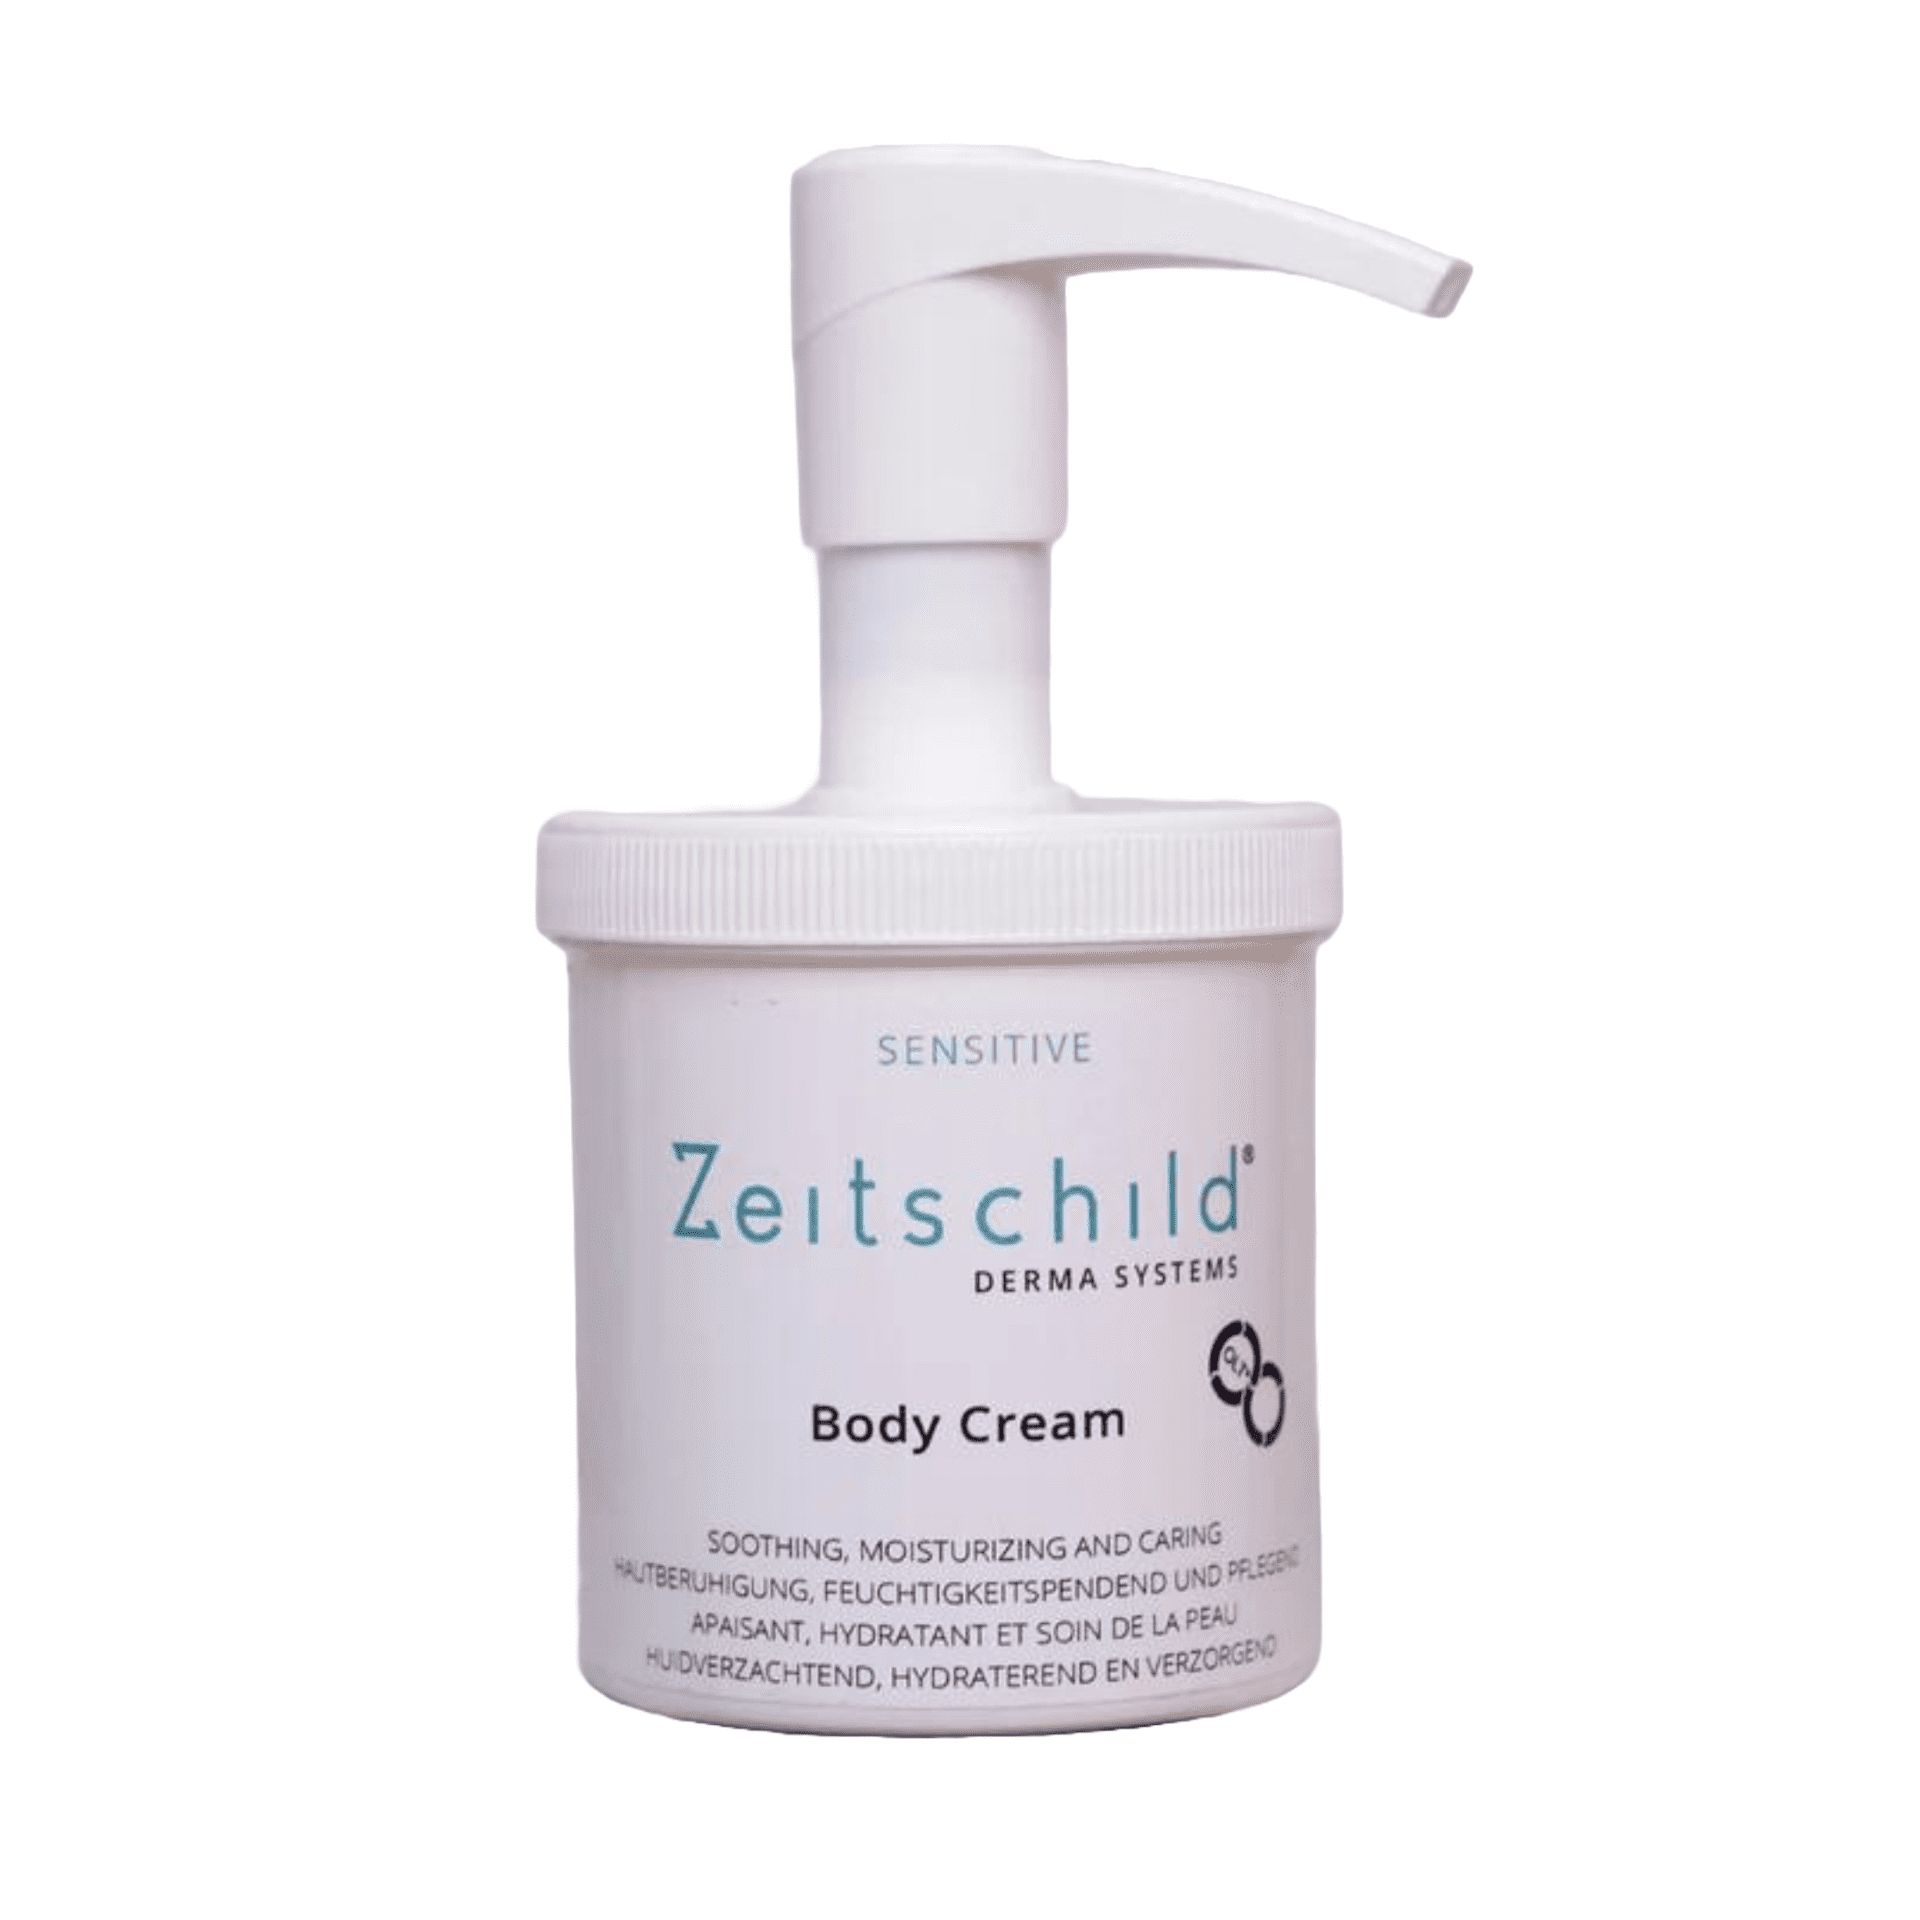 Zeitschild Derma Systems Body Cream Sensitive200ml